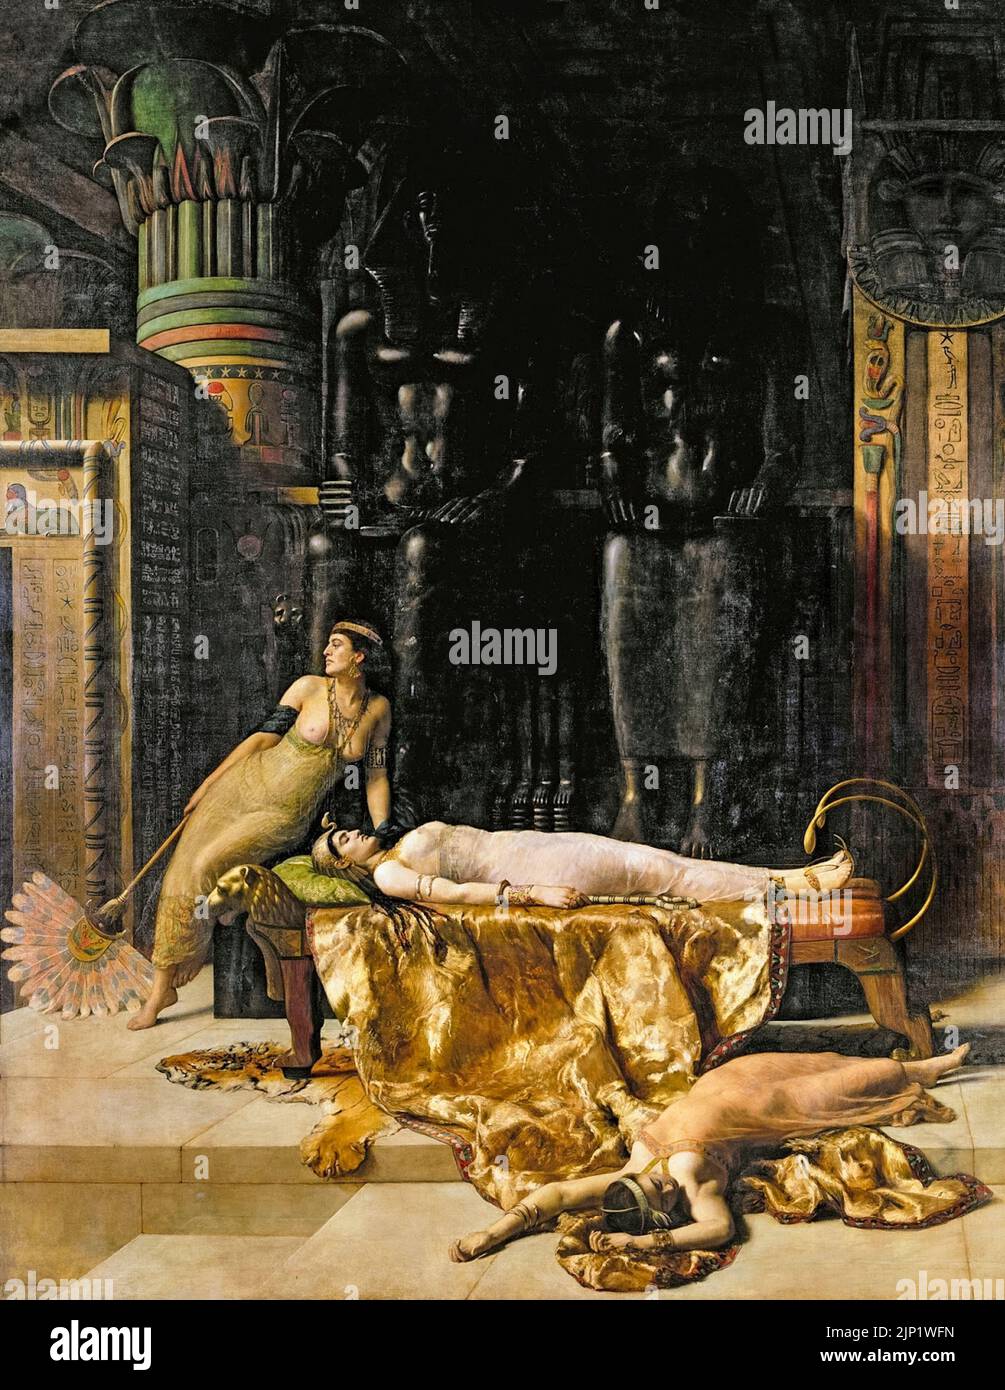 La mort de Cléopâtre, peinture à l'huile sur toile par John collier, 1890 Banque D'Images